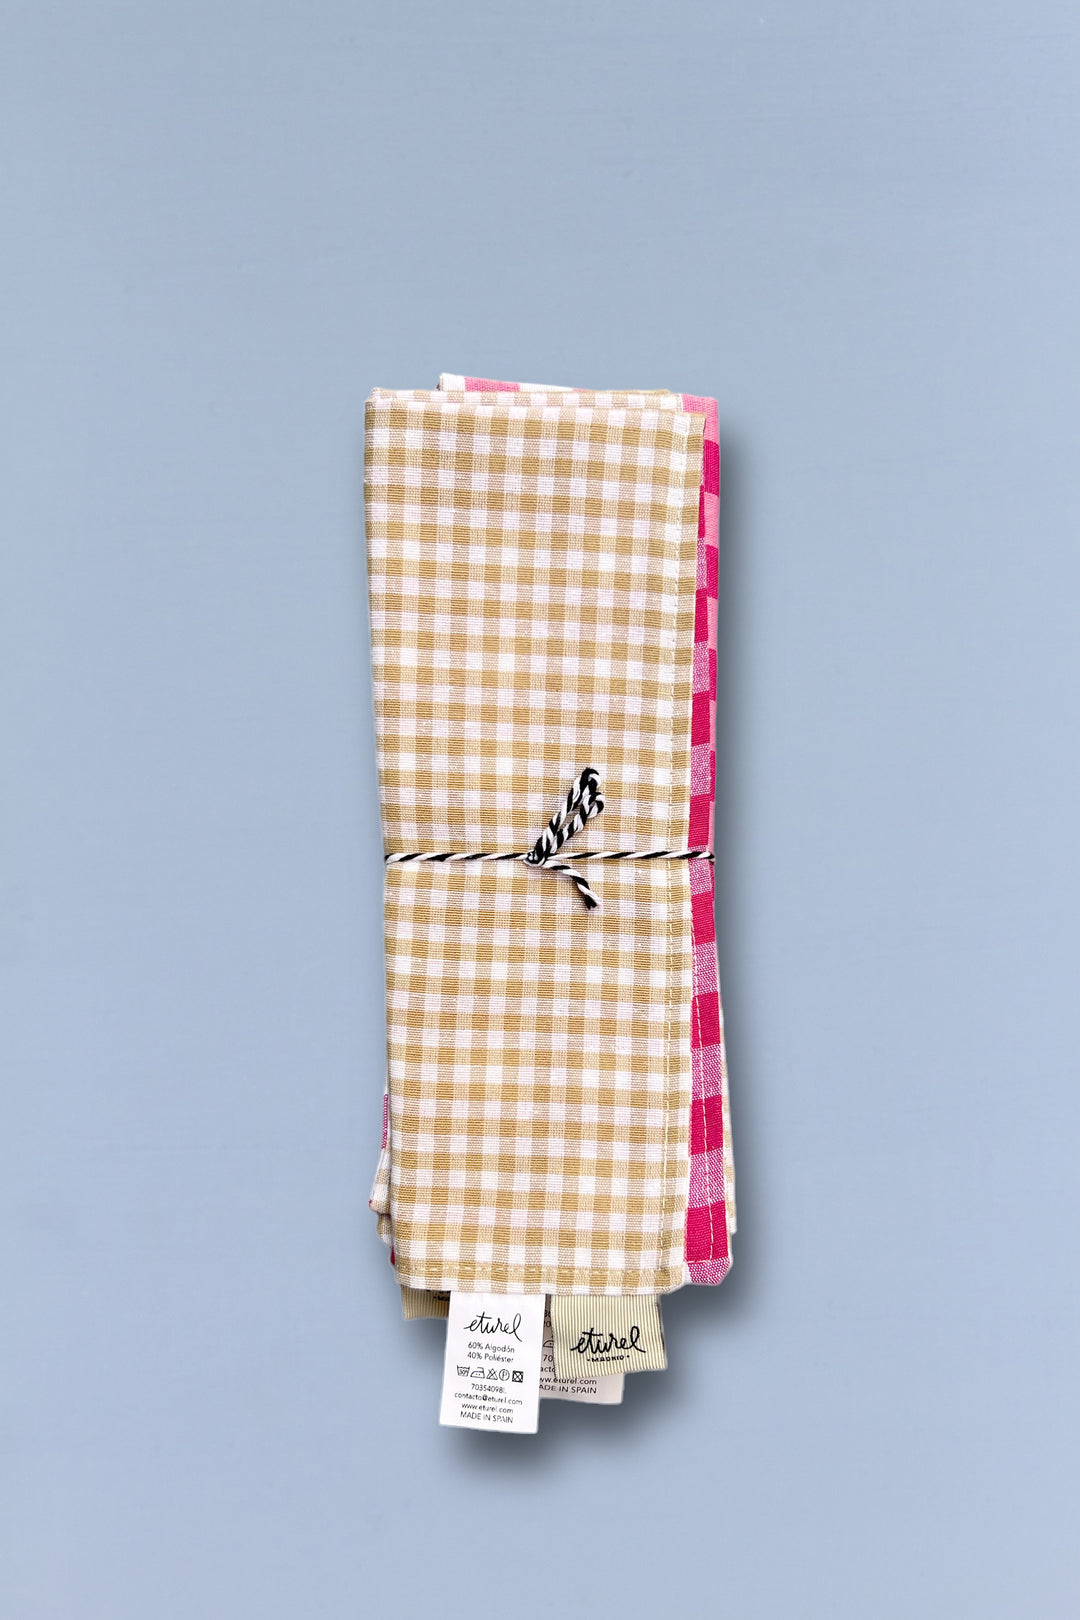 Mantel individual reversible 2 uds. cuadros vichy rosa y beige cerrado